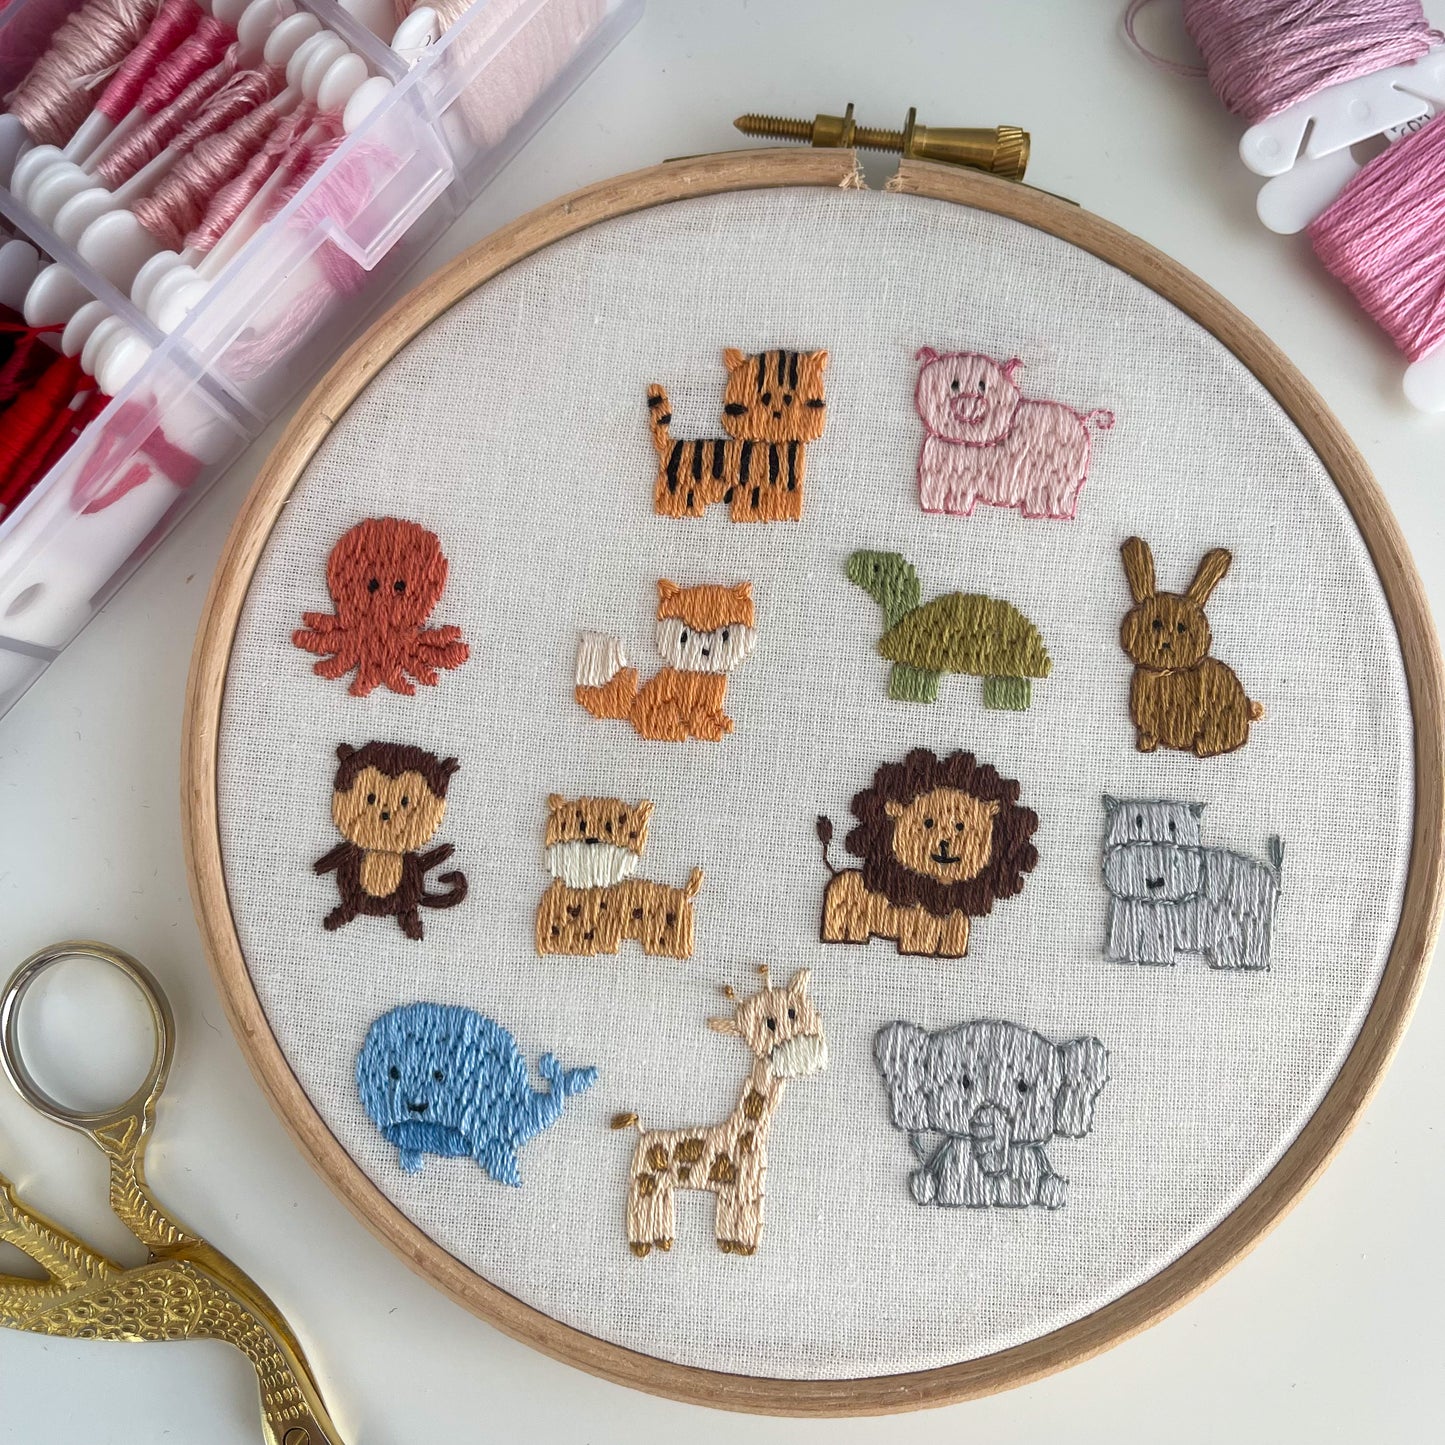 Baby Personalised Embroidery Hoop